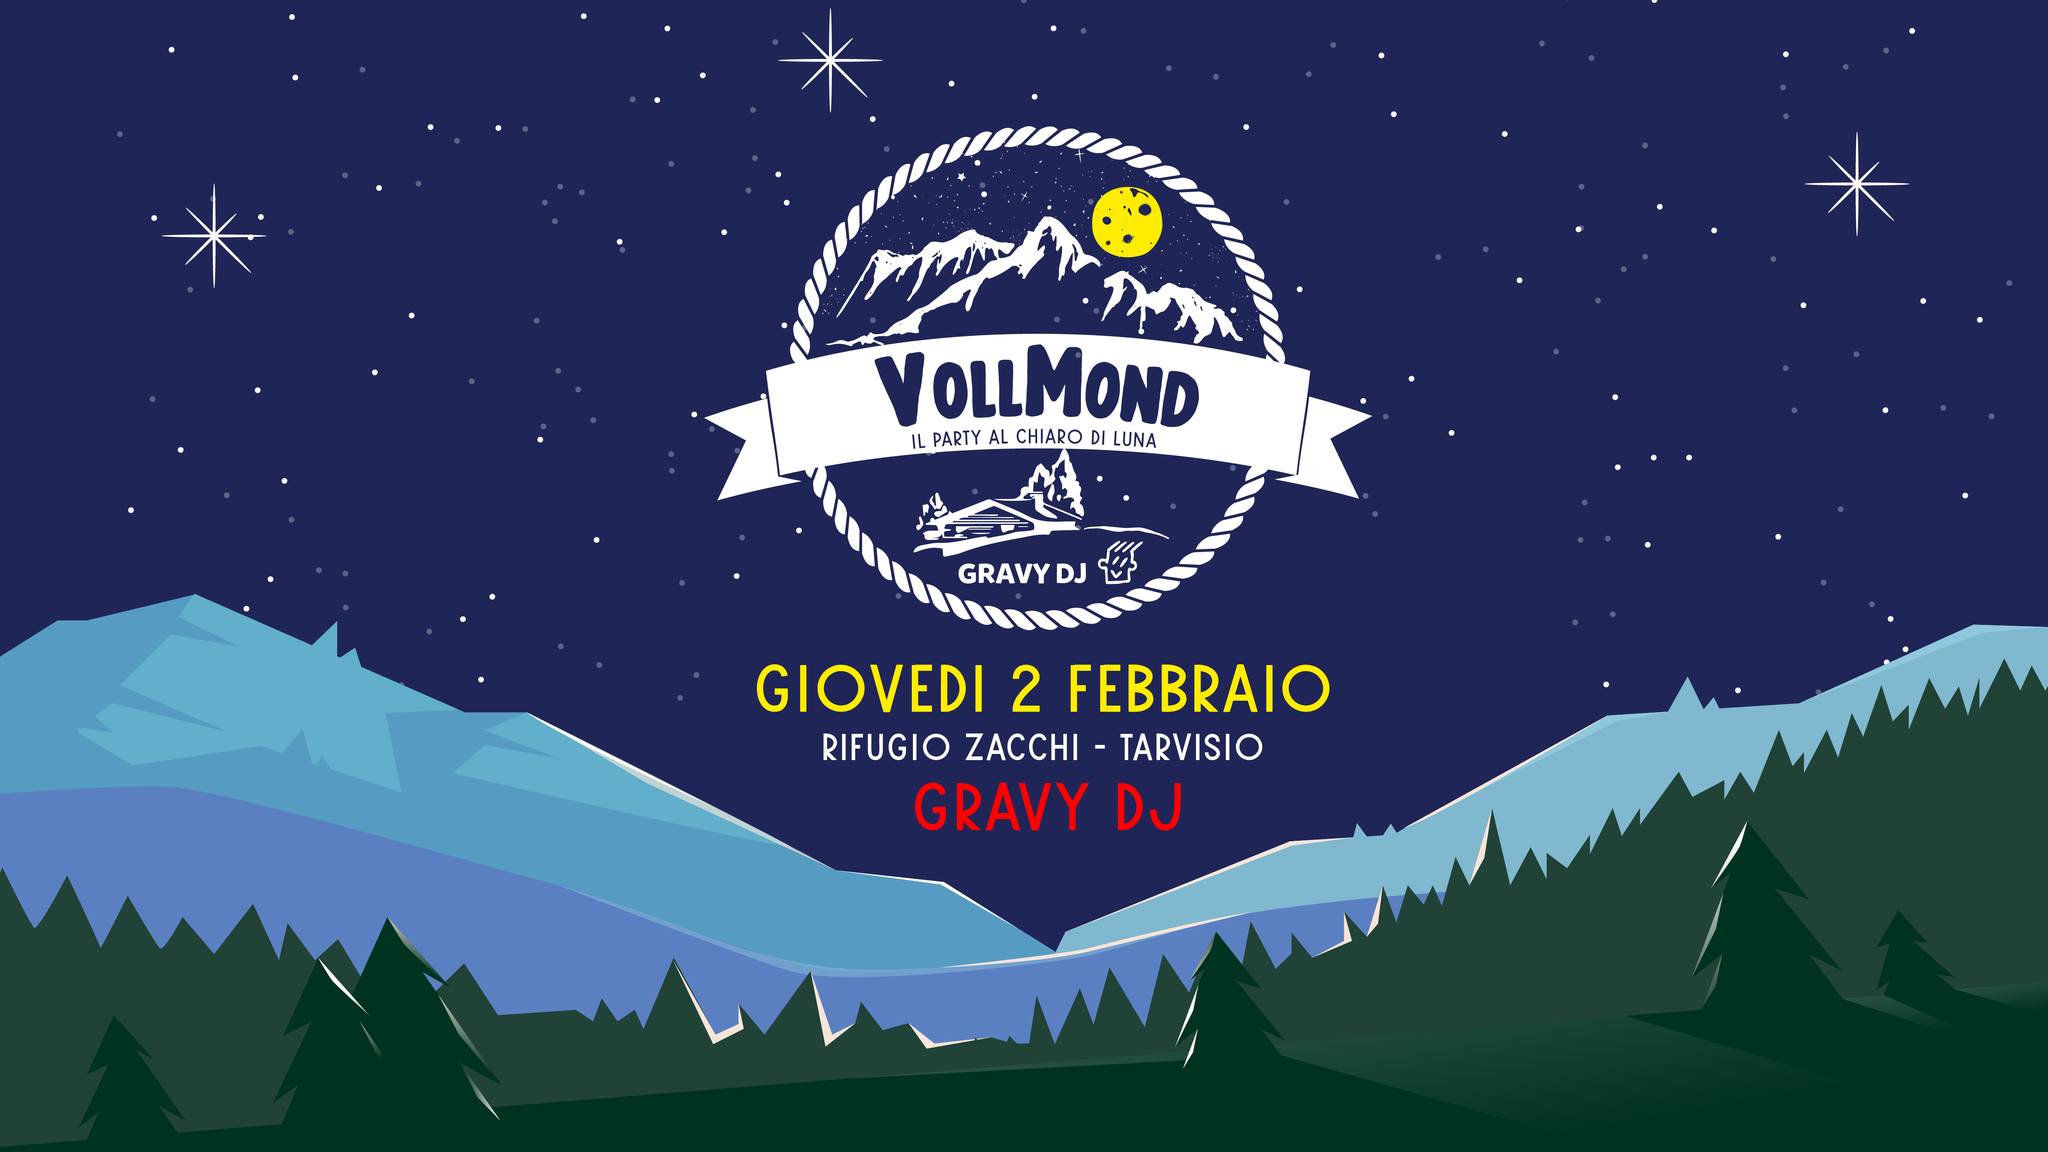 VollMond, il Party al Chiaro di Luna, Gravy Dj al Rifugio Zacchi